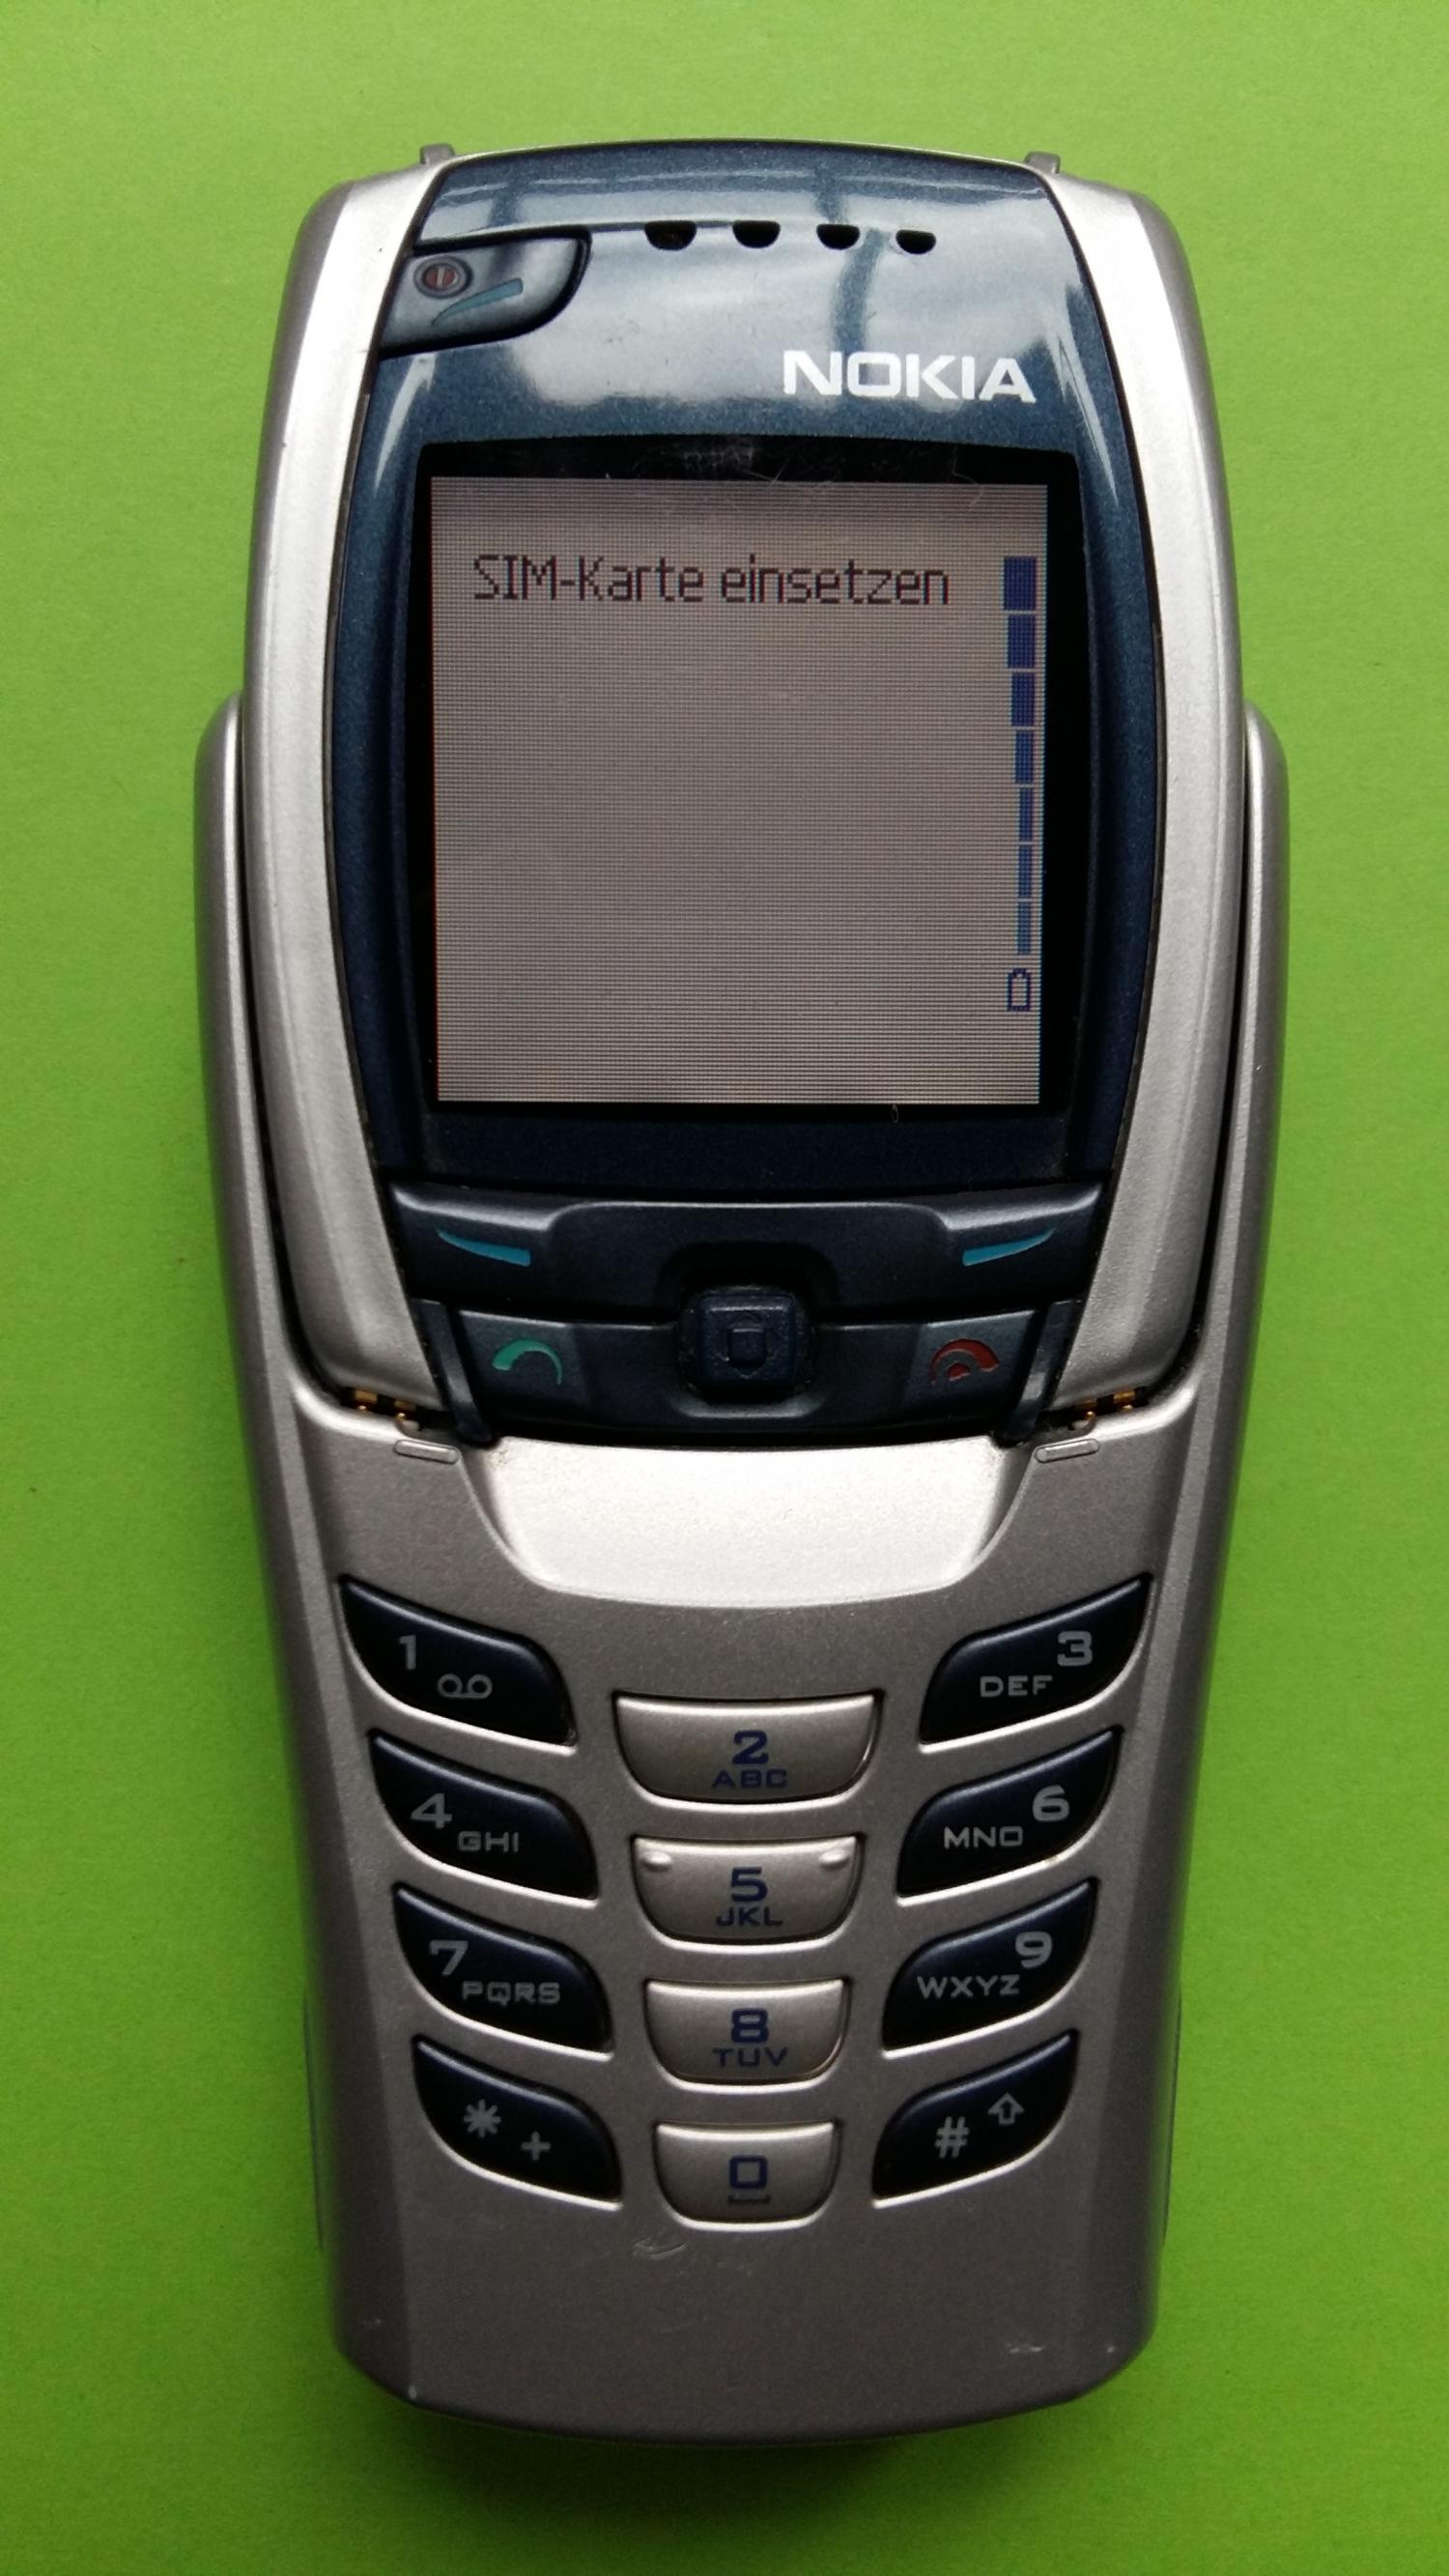 image-7331696-Nokia 6800 (2)1.jpg